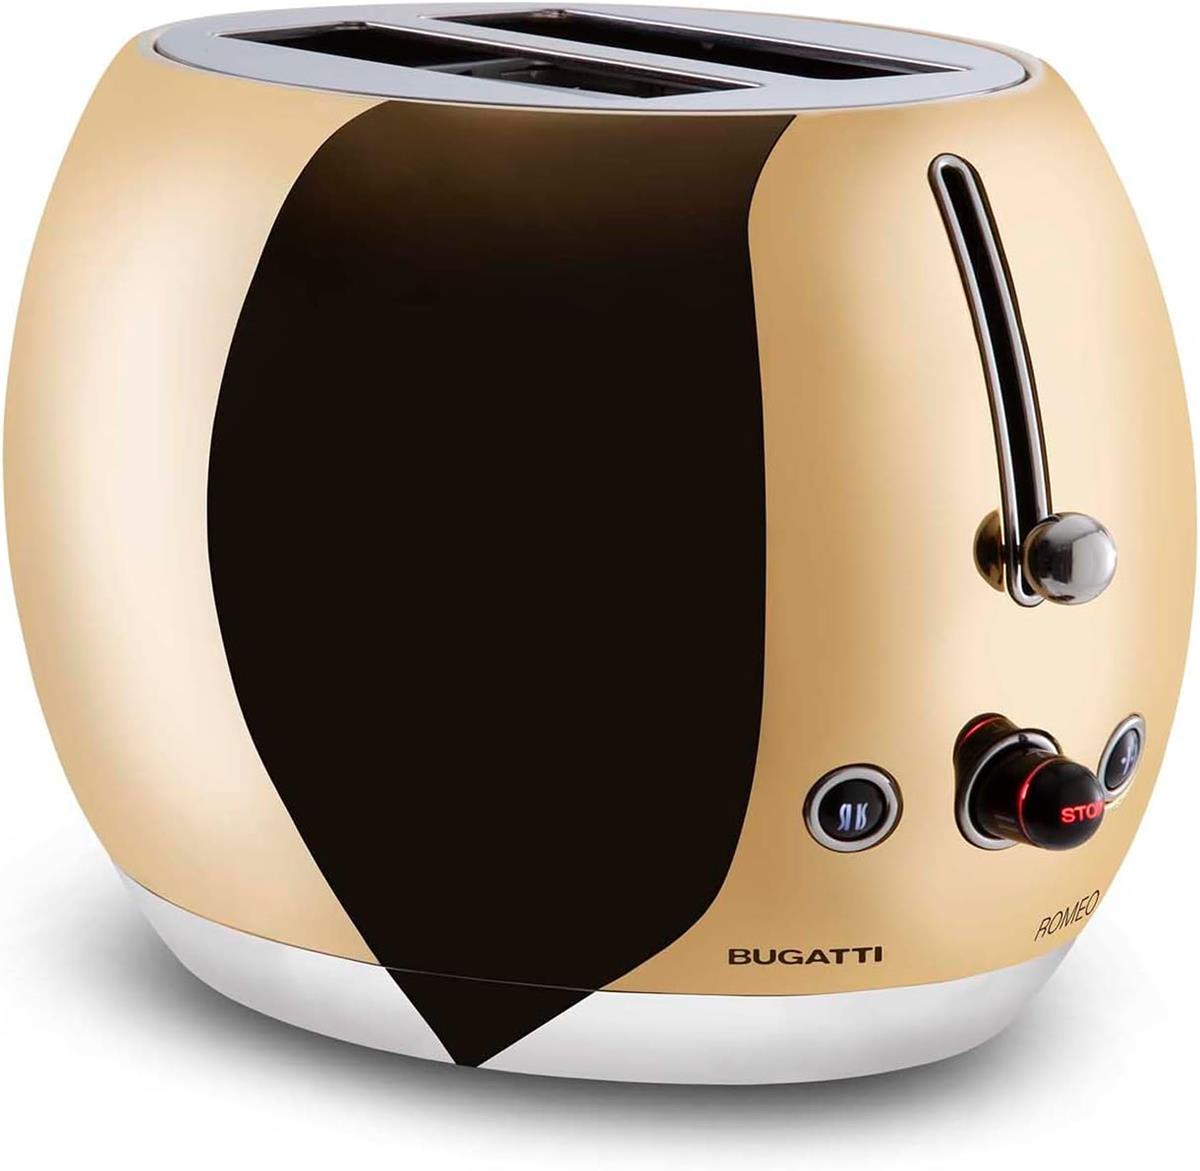 BUGATTI-Romeo-Toaster, 7 níveis de torrar, 4 funções-Pinças não incluídas-870-1035W-Ouro Amarelo